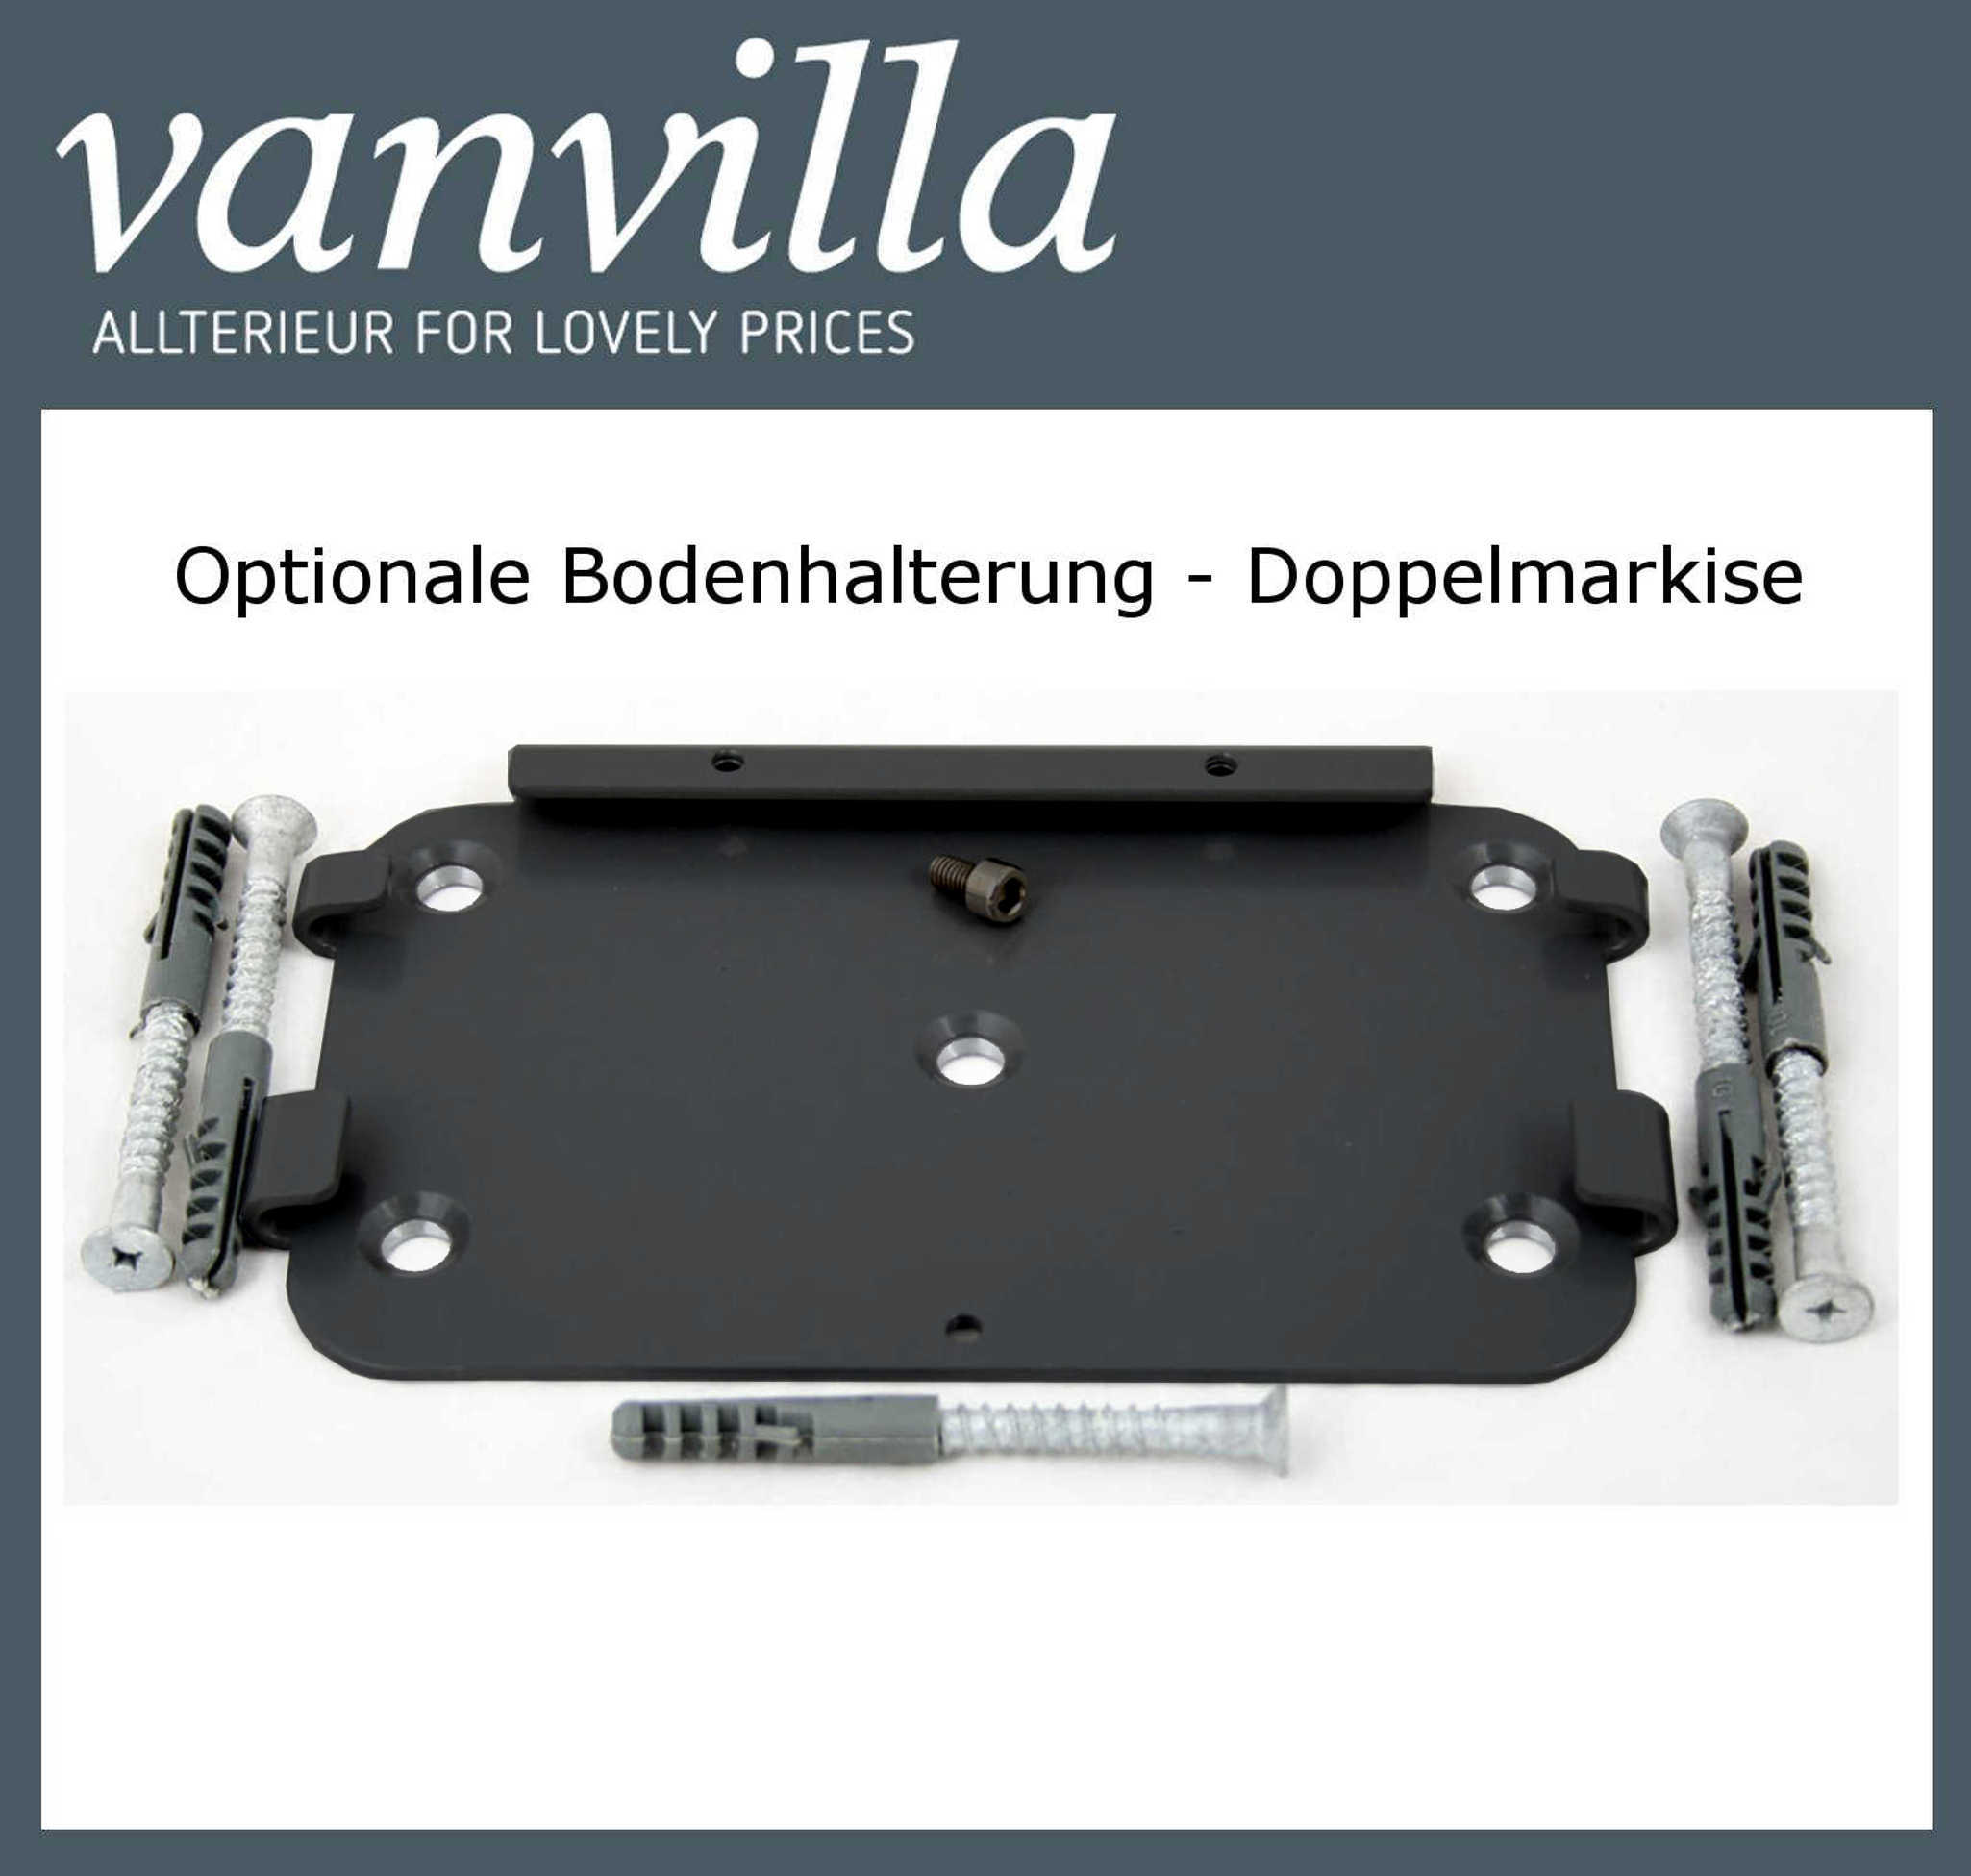 vanvilla Bodenhalterung für Doppelmarkise (Kassette) Nur für Modell Anthrazit RAL 7016